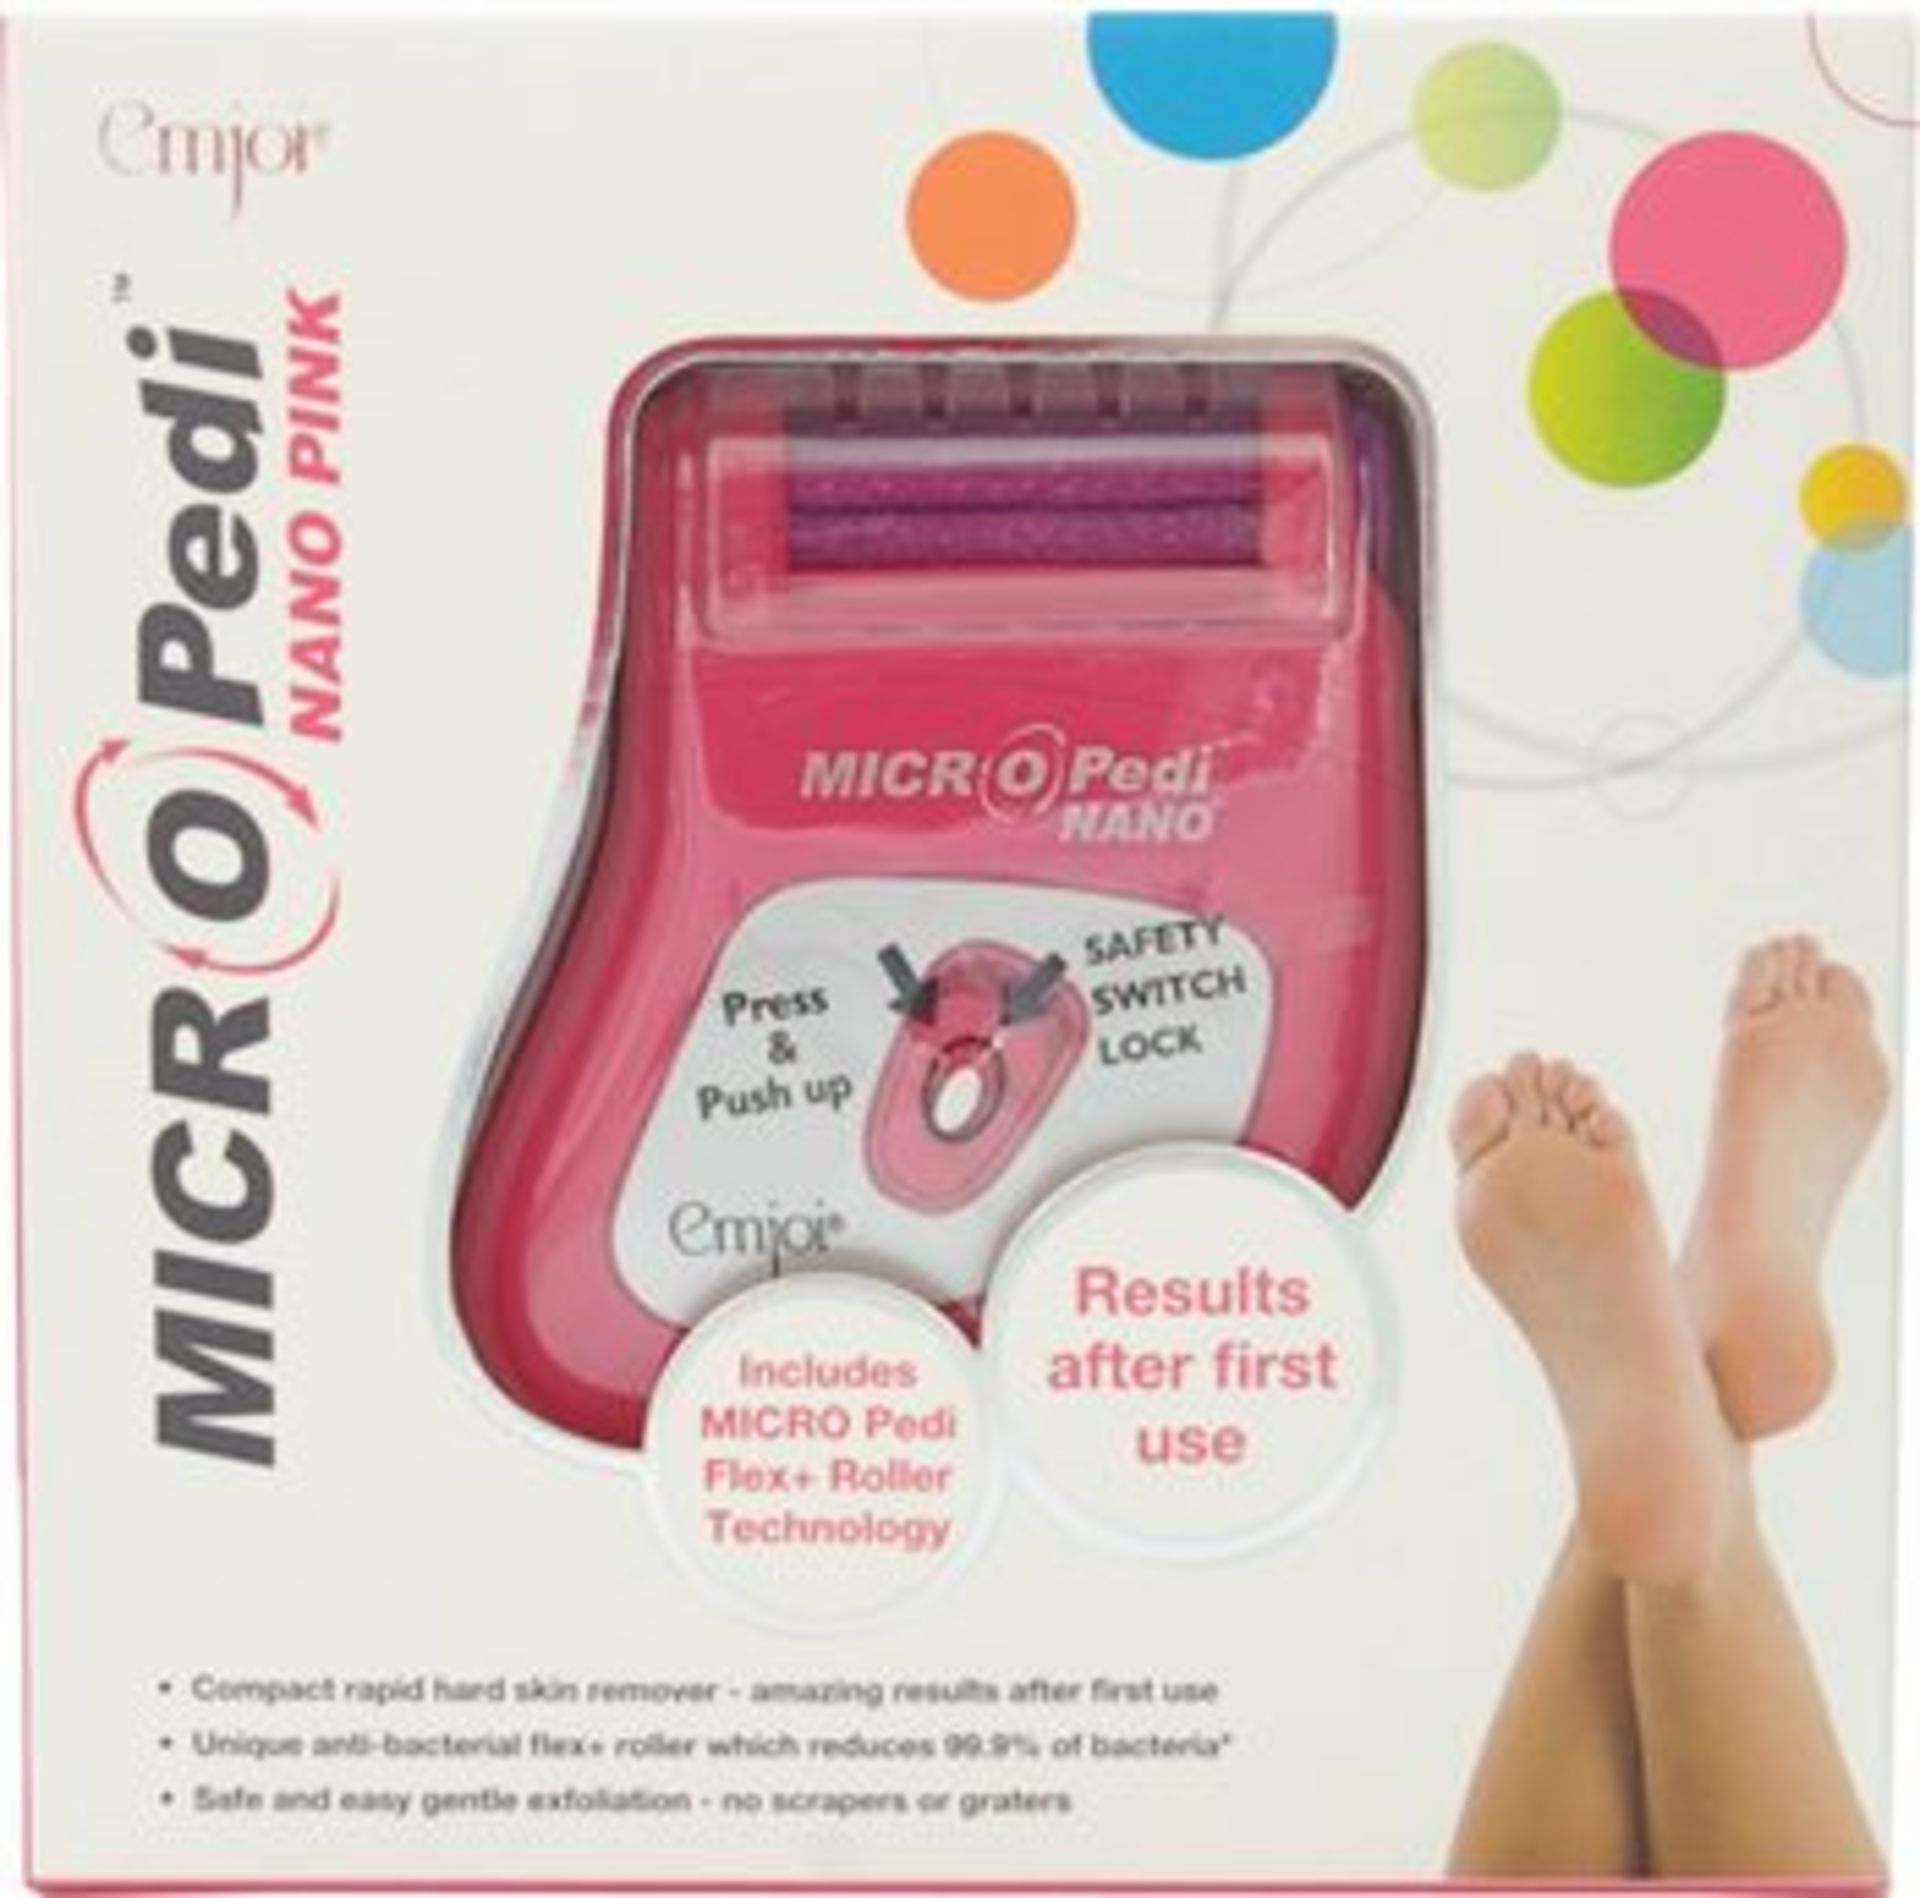 V *TRADE QTY* Brand New Micro Pedi Nano pink pedicure roller ISP £29.99 (Ocado) X 5 YOUR BID PRICE